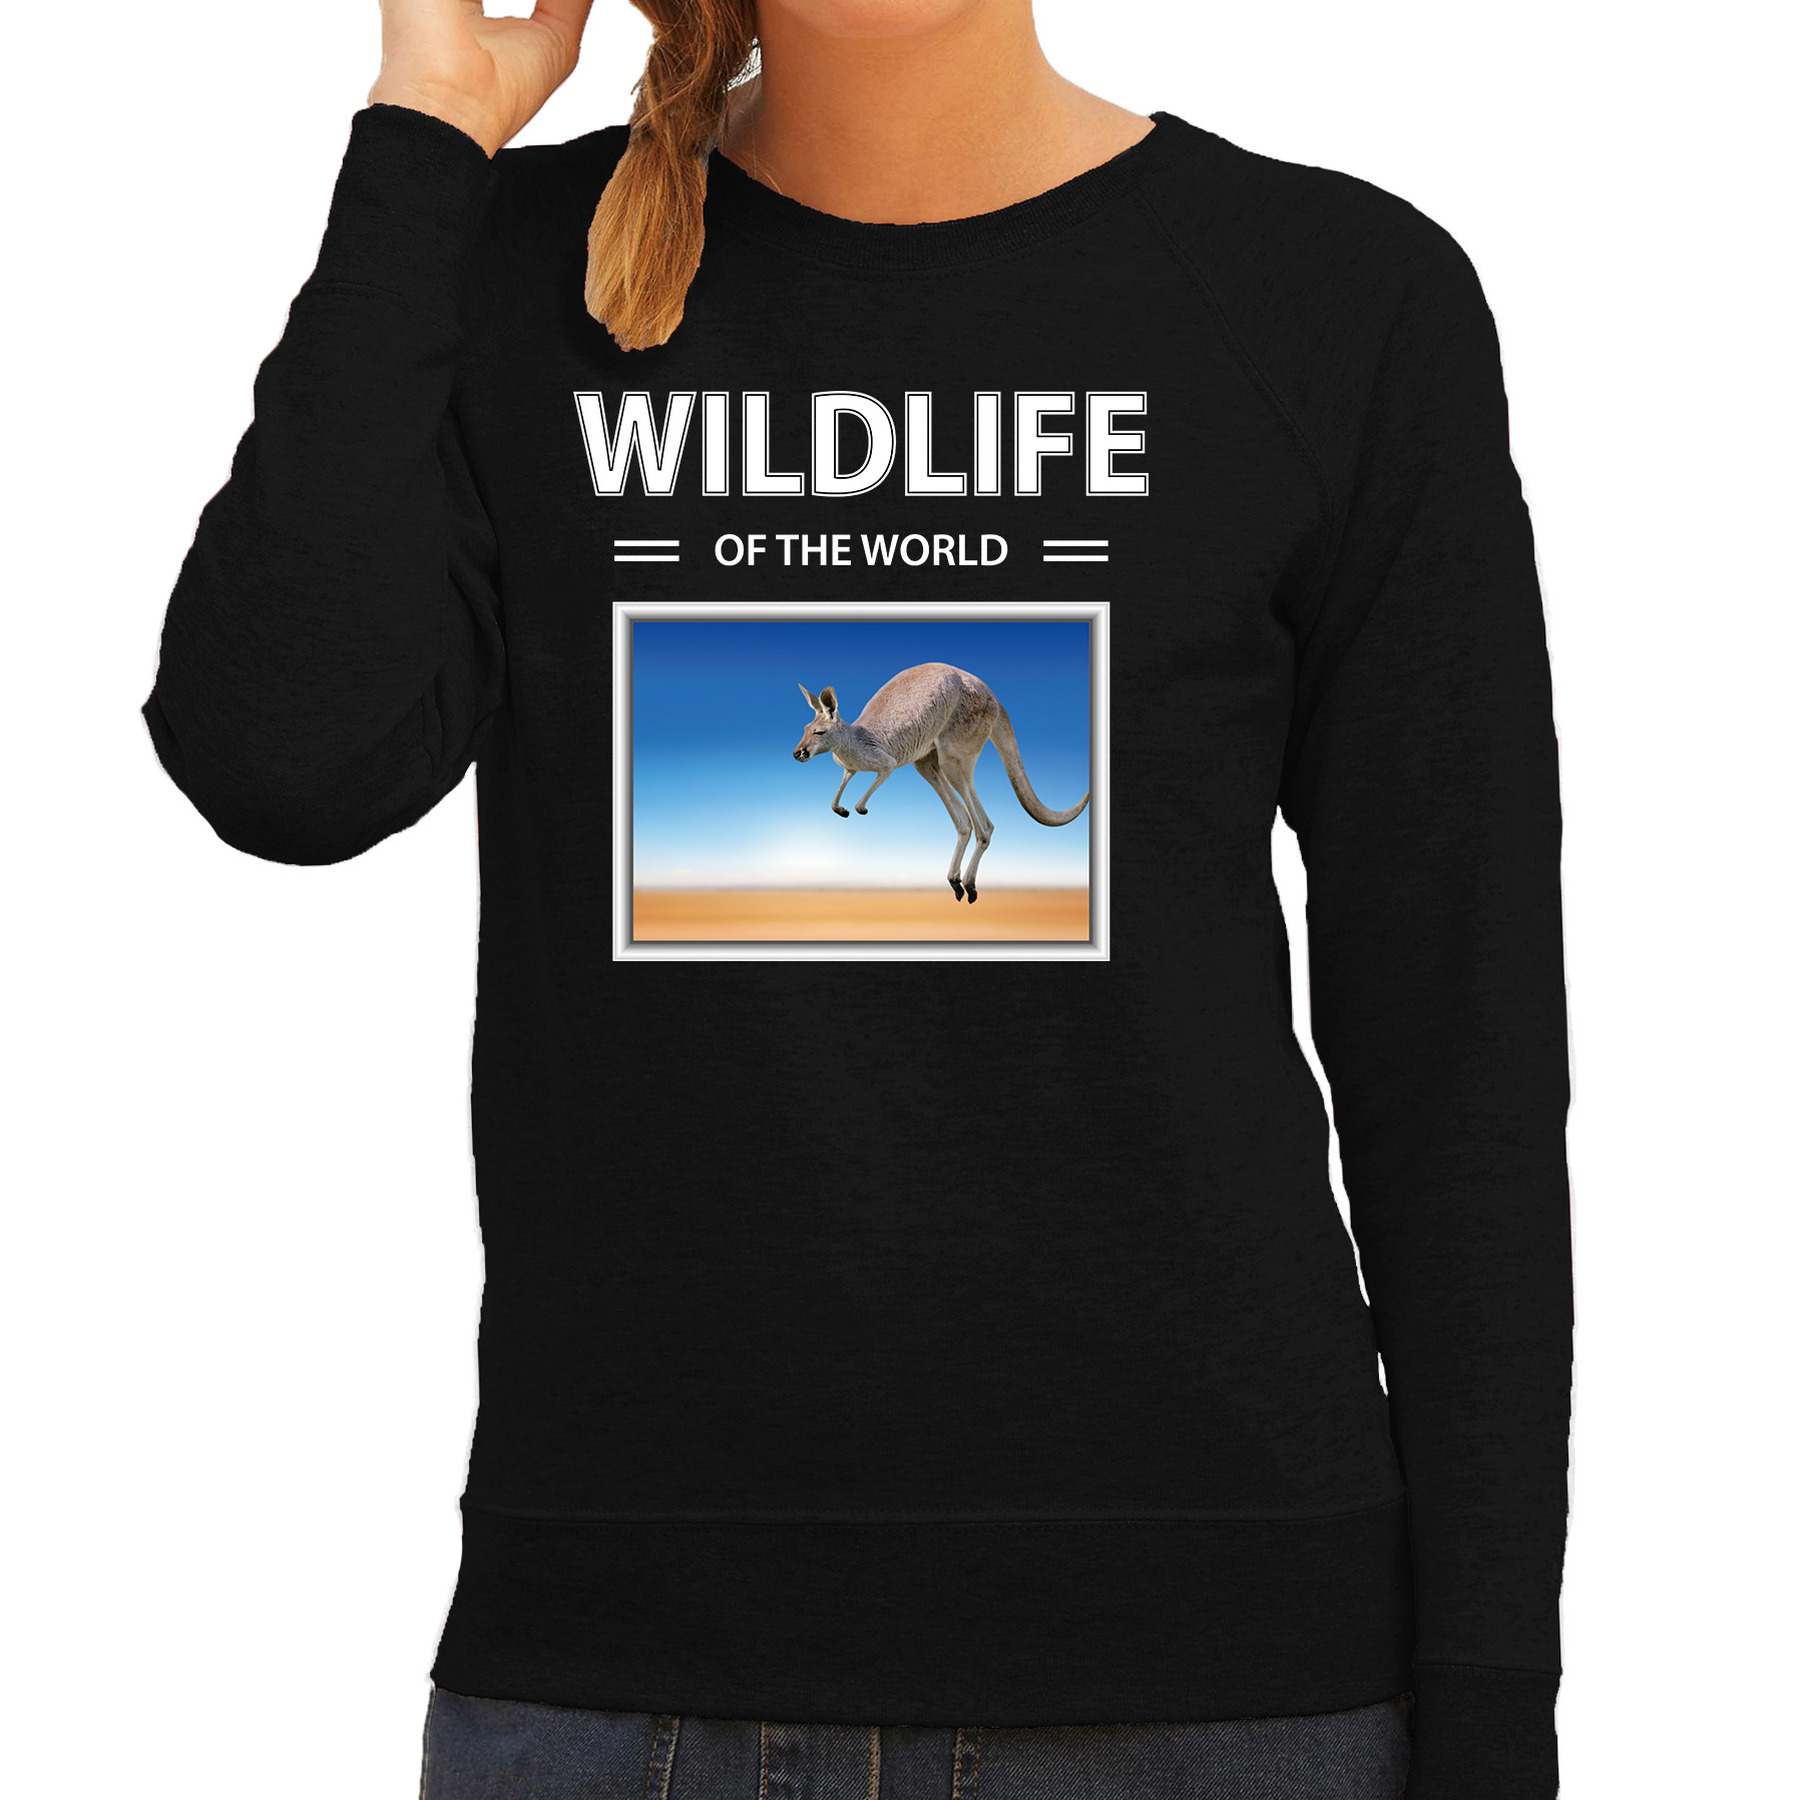 Kangaroe sweater / trui met dieren foto wildlife of the world zwart voor dames